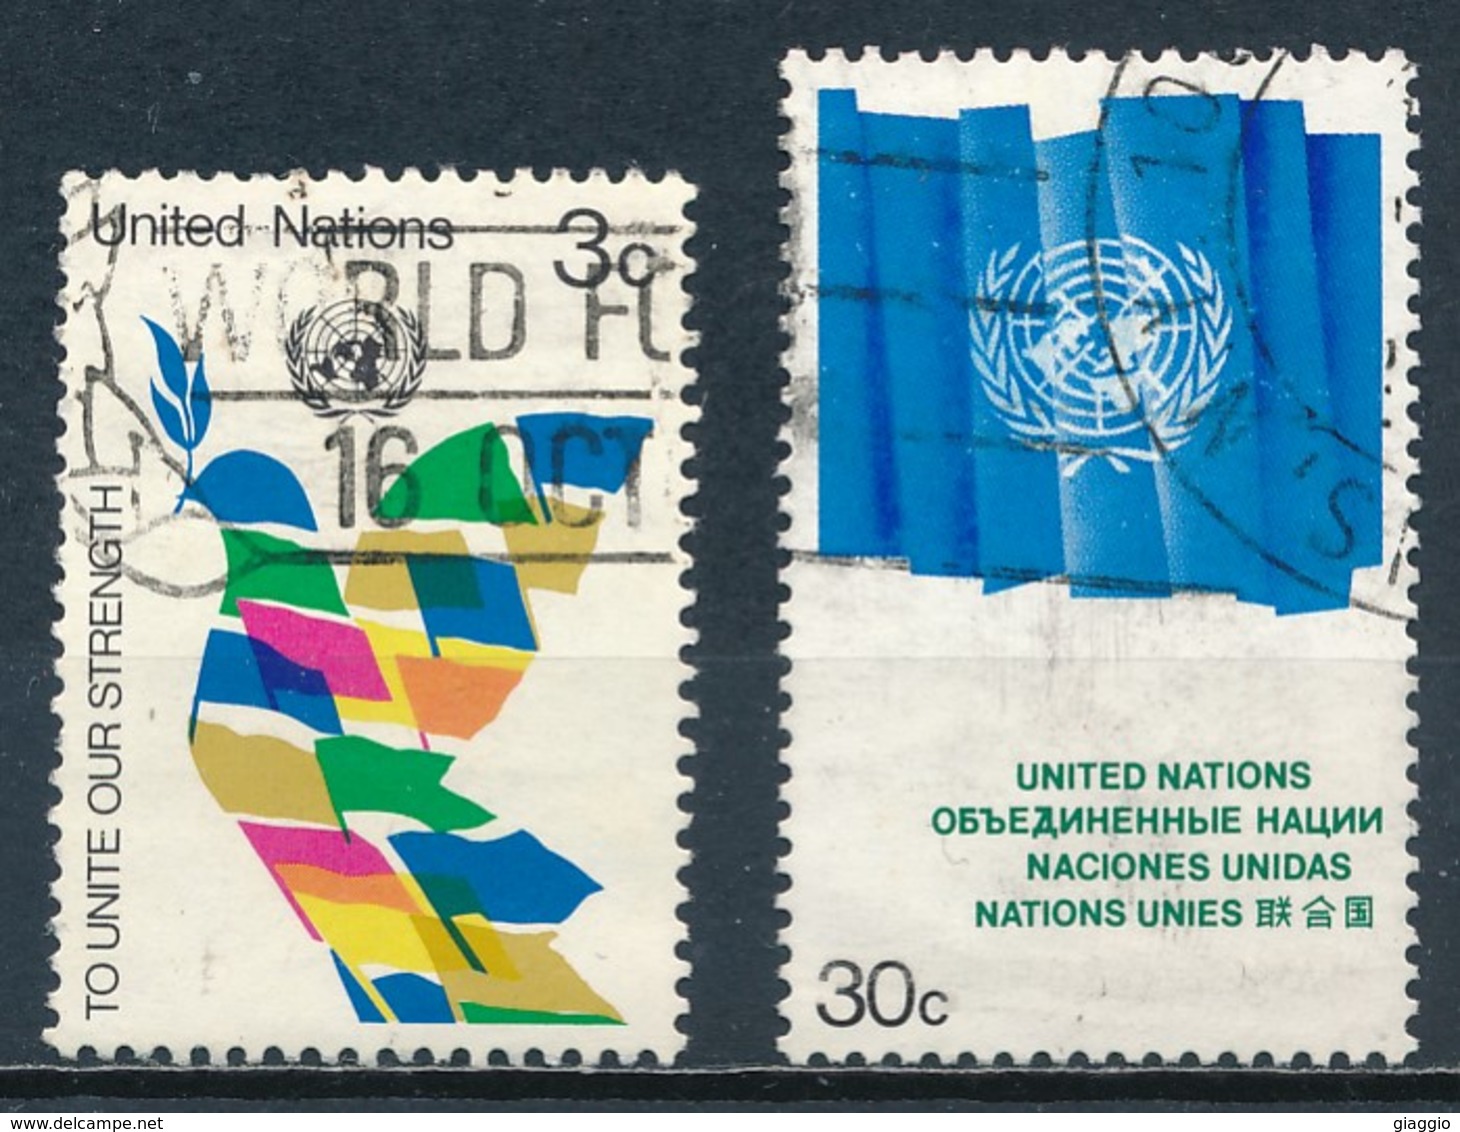 °°° ONU NEW YORK - Y&T N°259/61 - 1976 °°° - Gebraucht